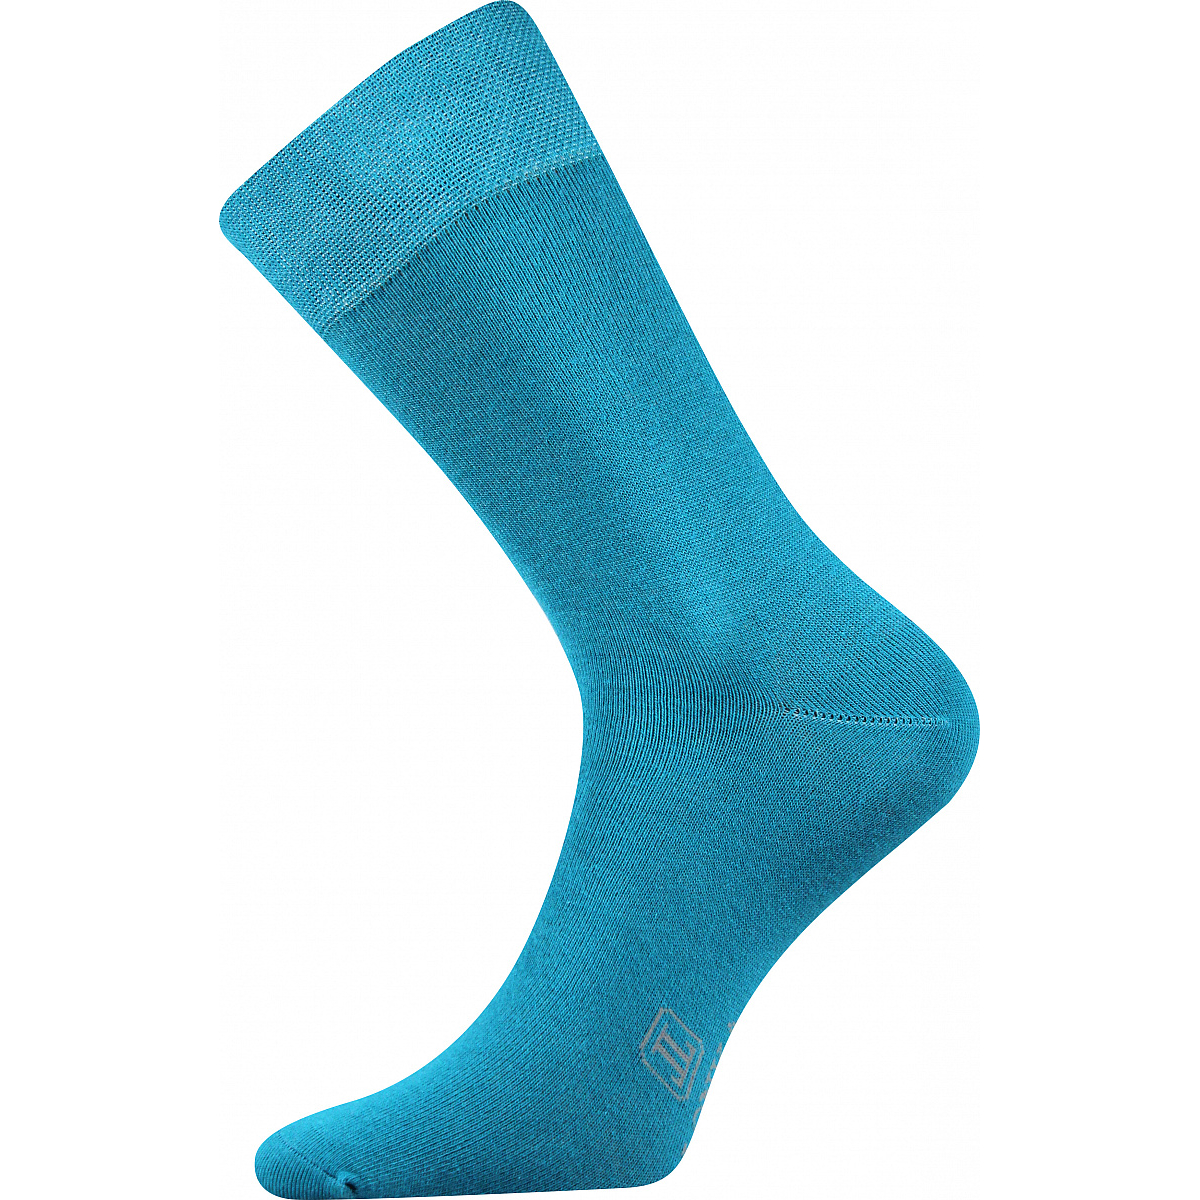 Ponožky pánské Lonka Decolor - tyrkysové, 39-42